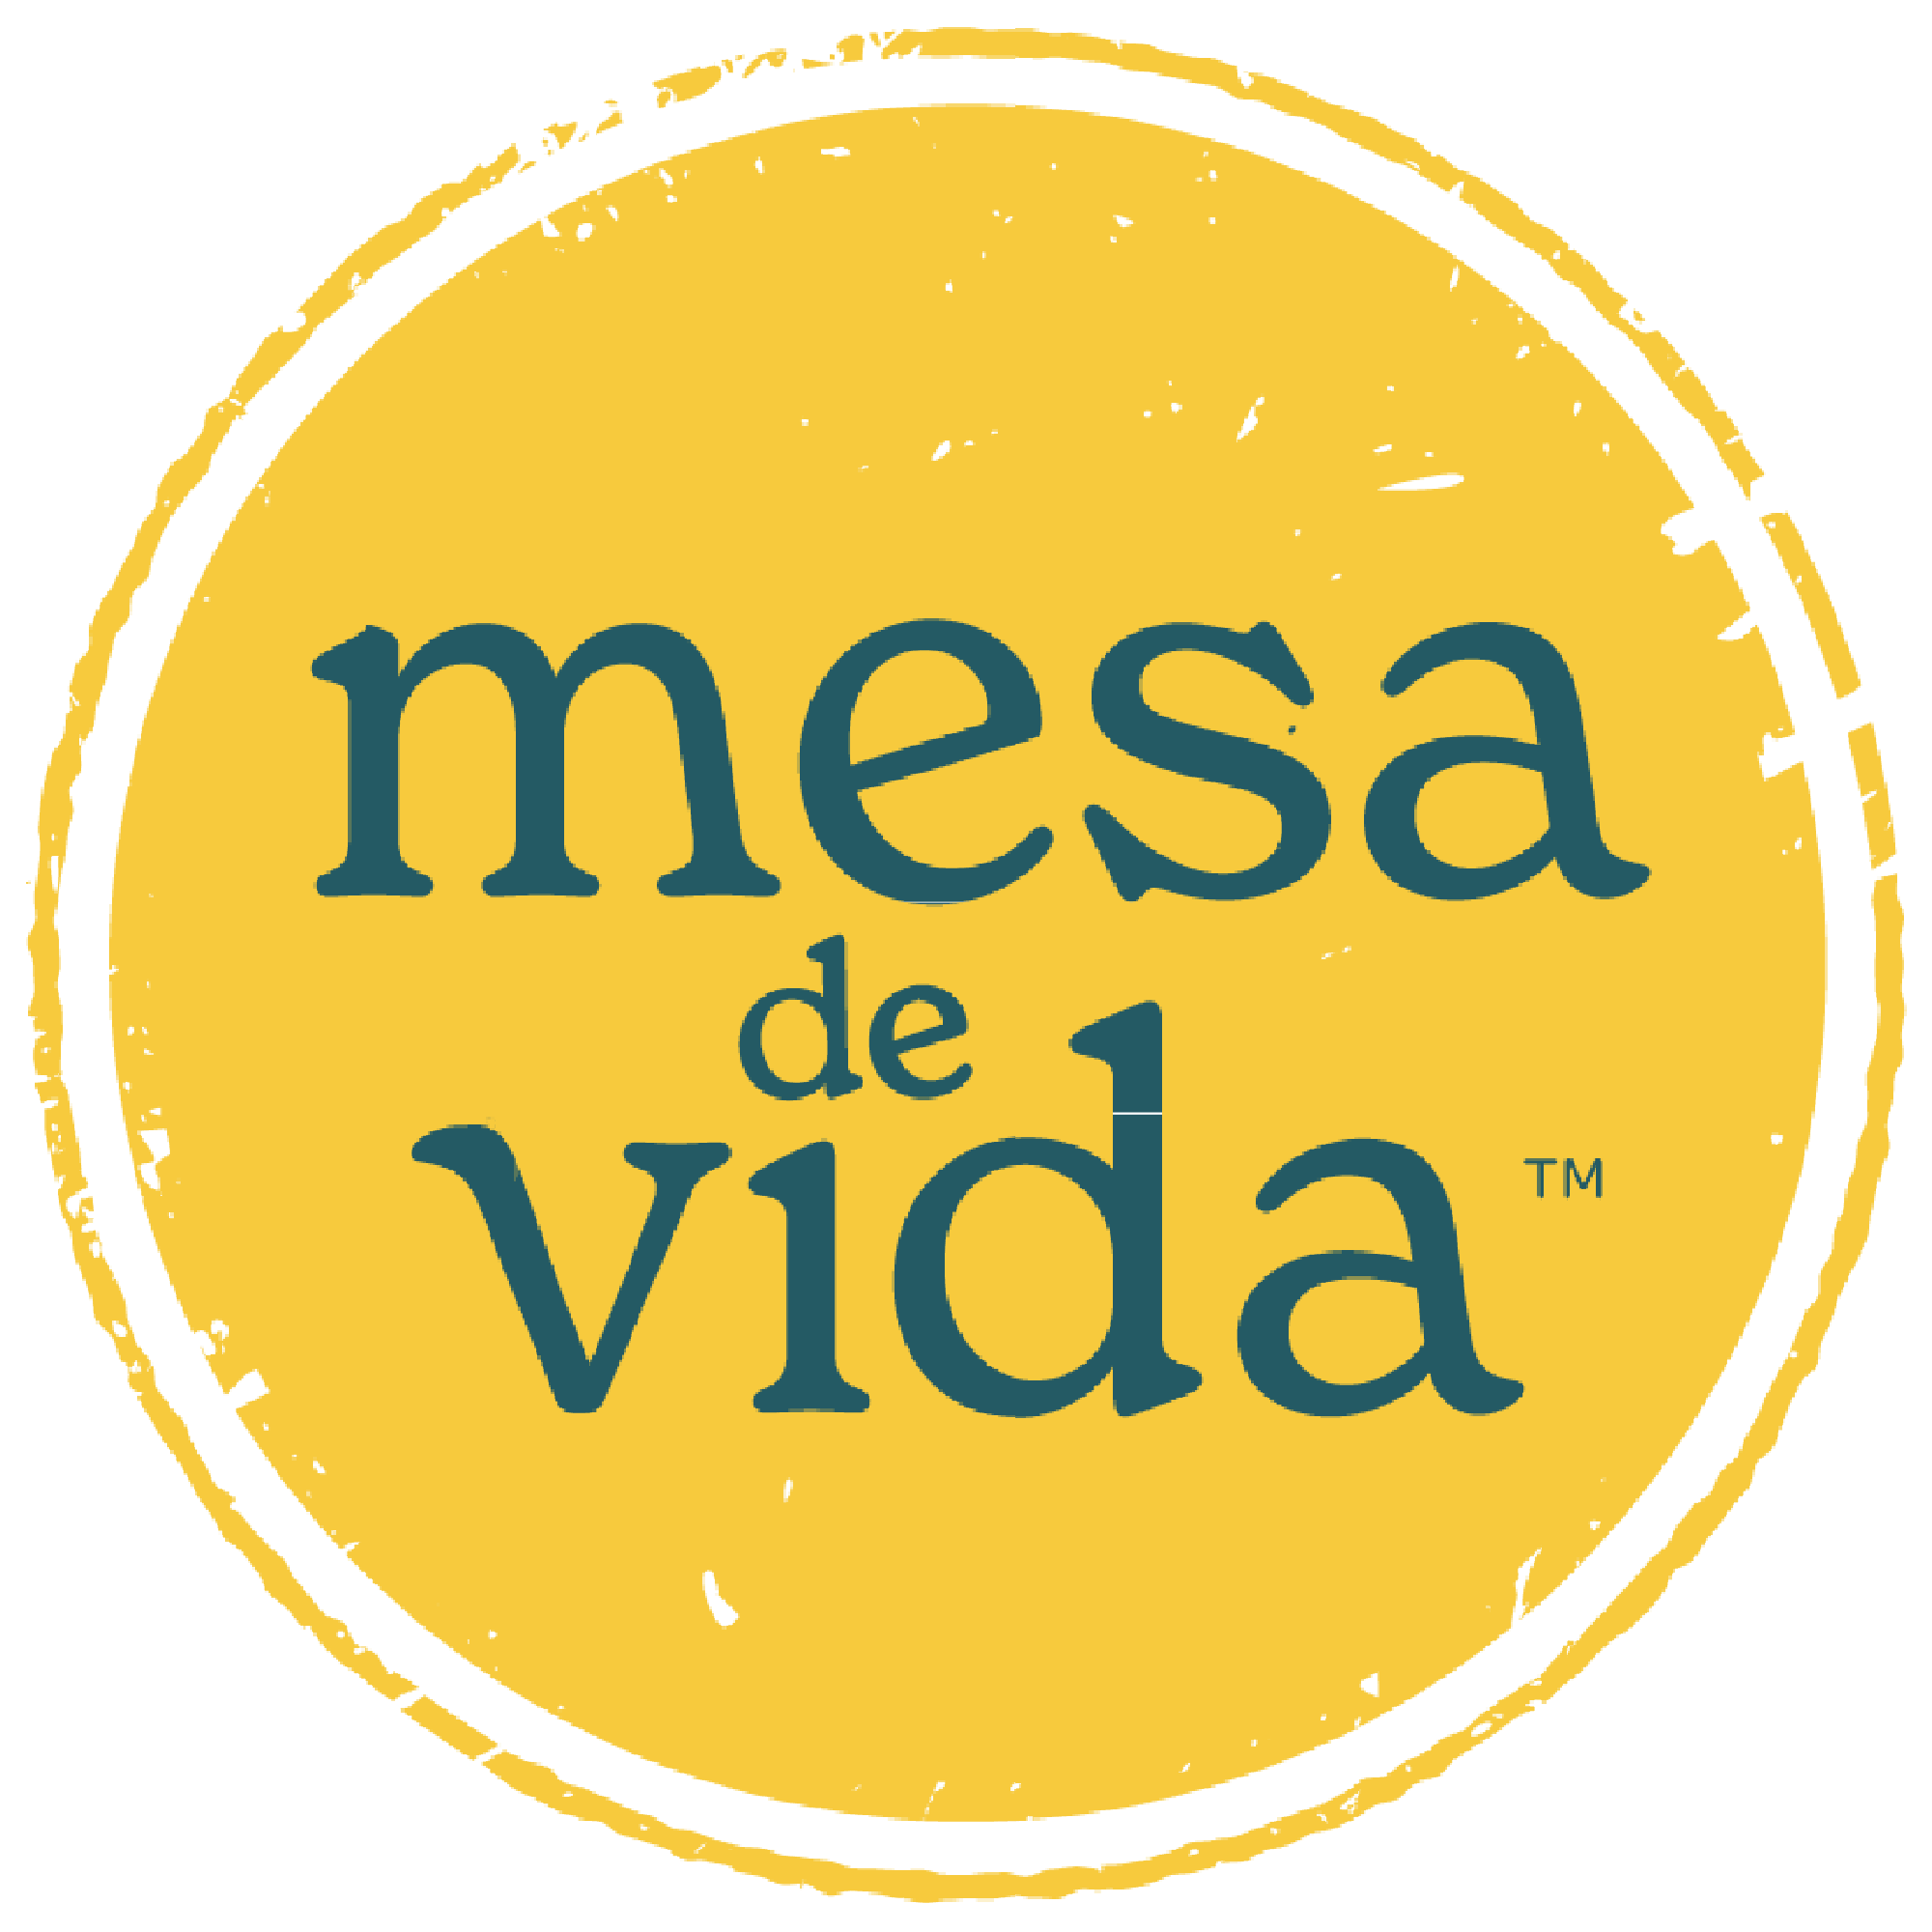 Mesa de Vida logo - a gold circle (nodding to the sun, a passport stamp, or a round table) with the words "Mesa de Vida" in teal